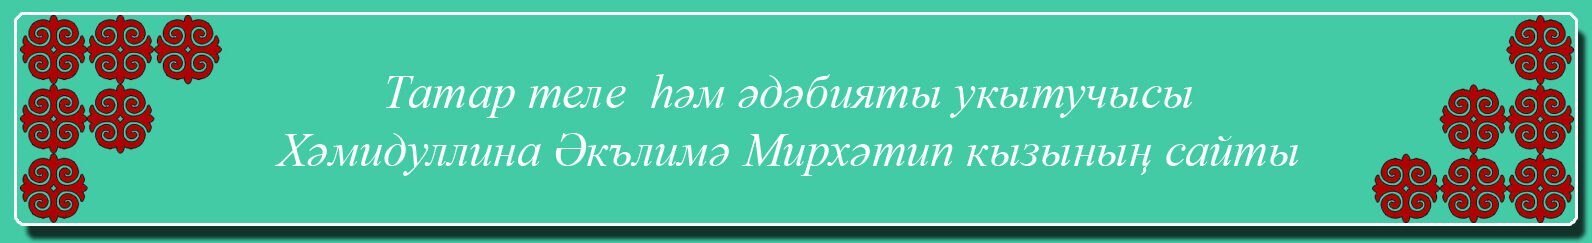 Сайт учителя татарского языка